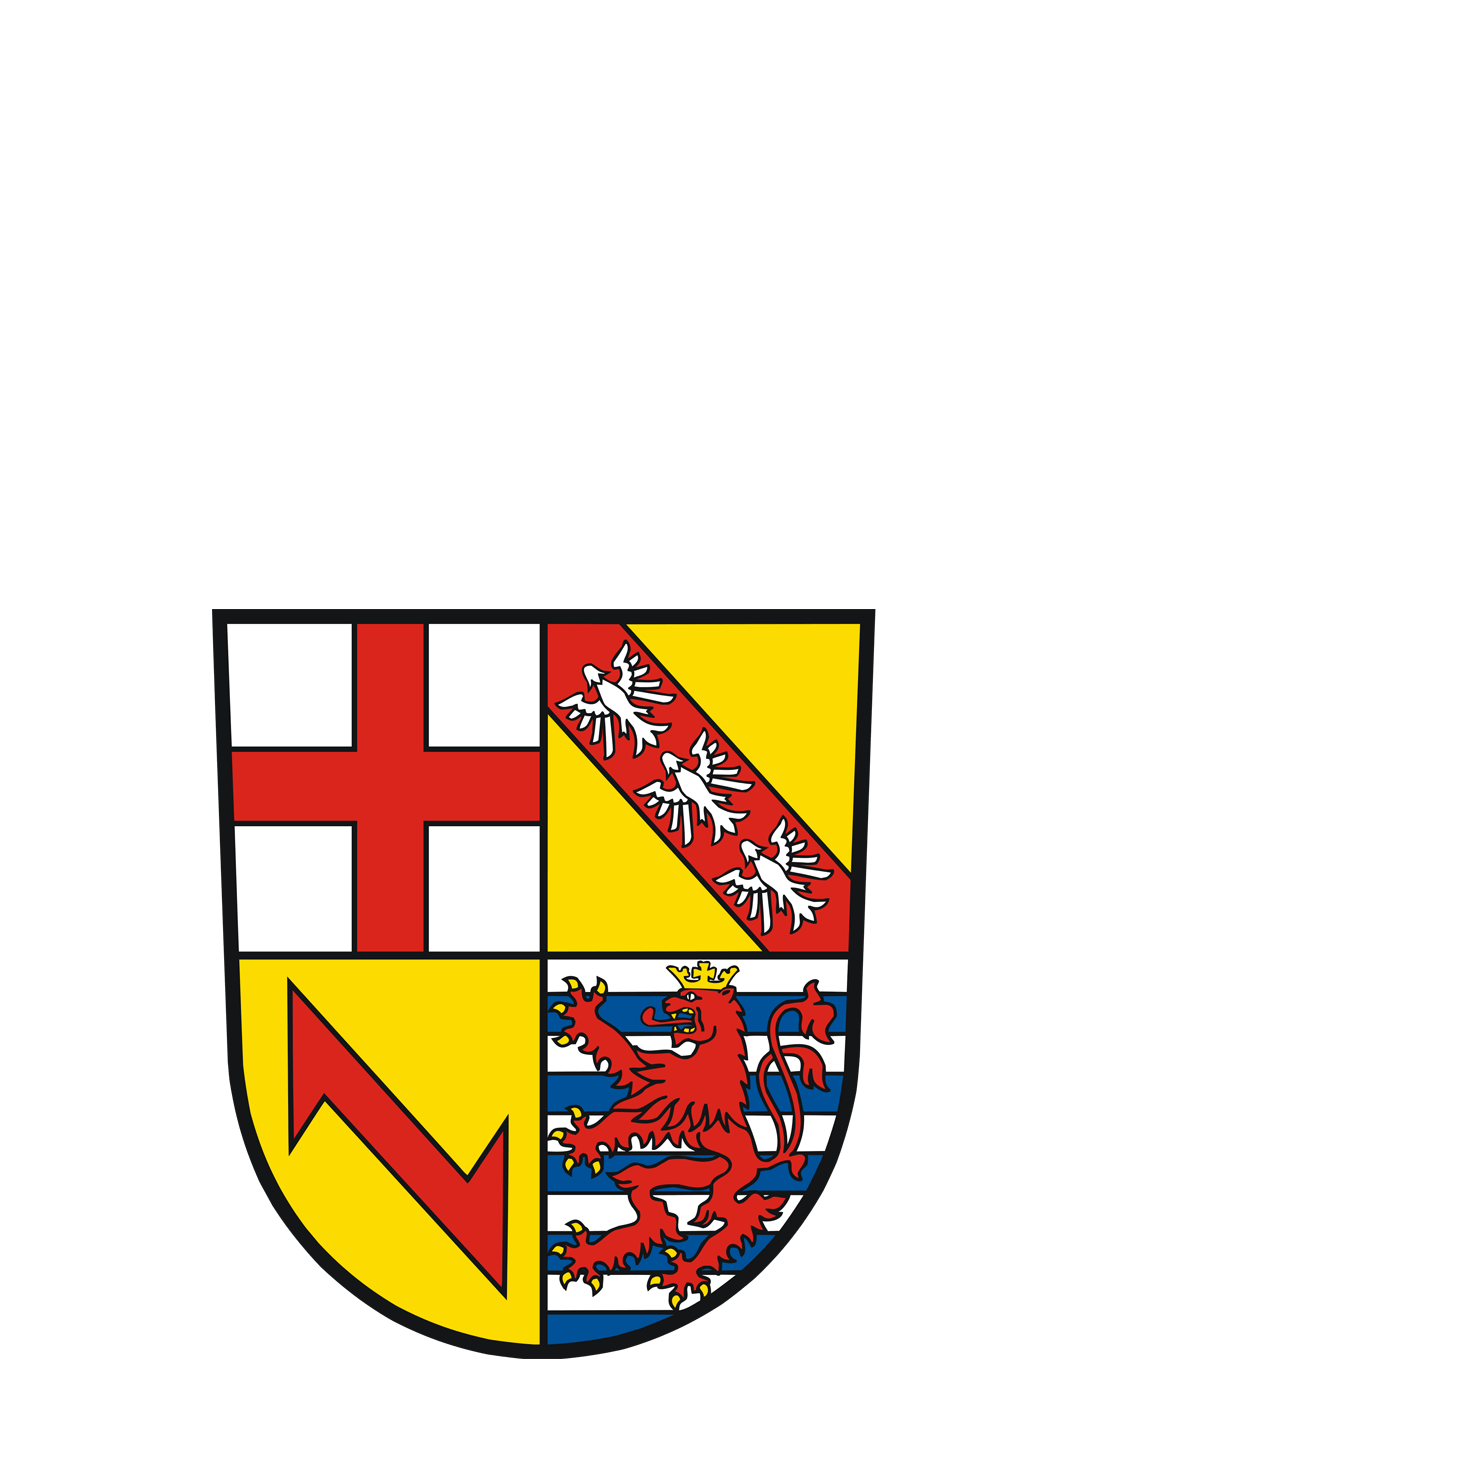 Wappen des Landkreis Merzig/Wadern - © Landkreis Merzig/Wadern